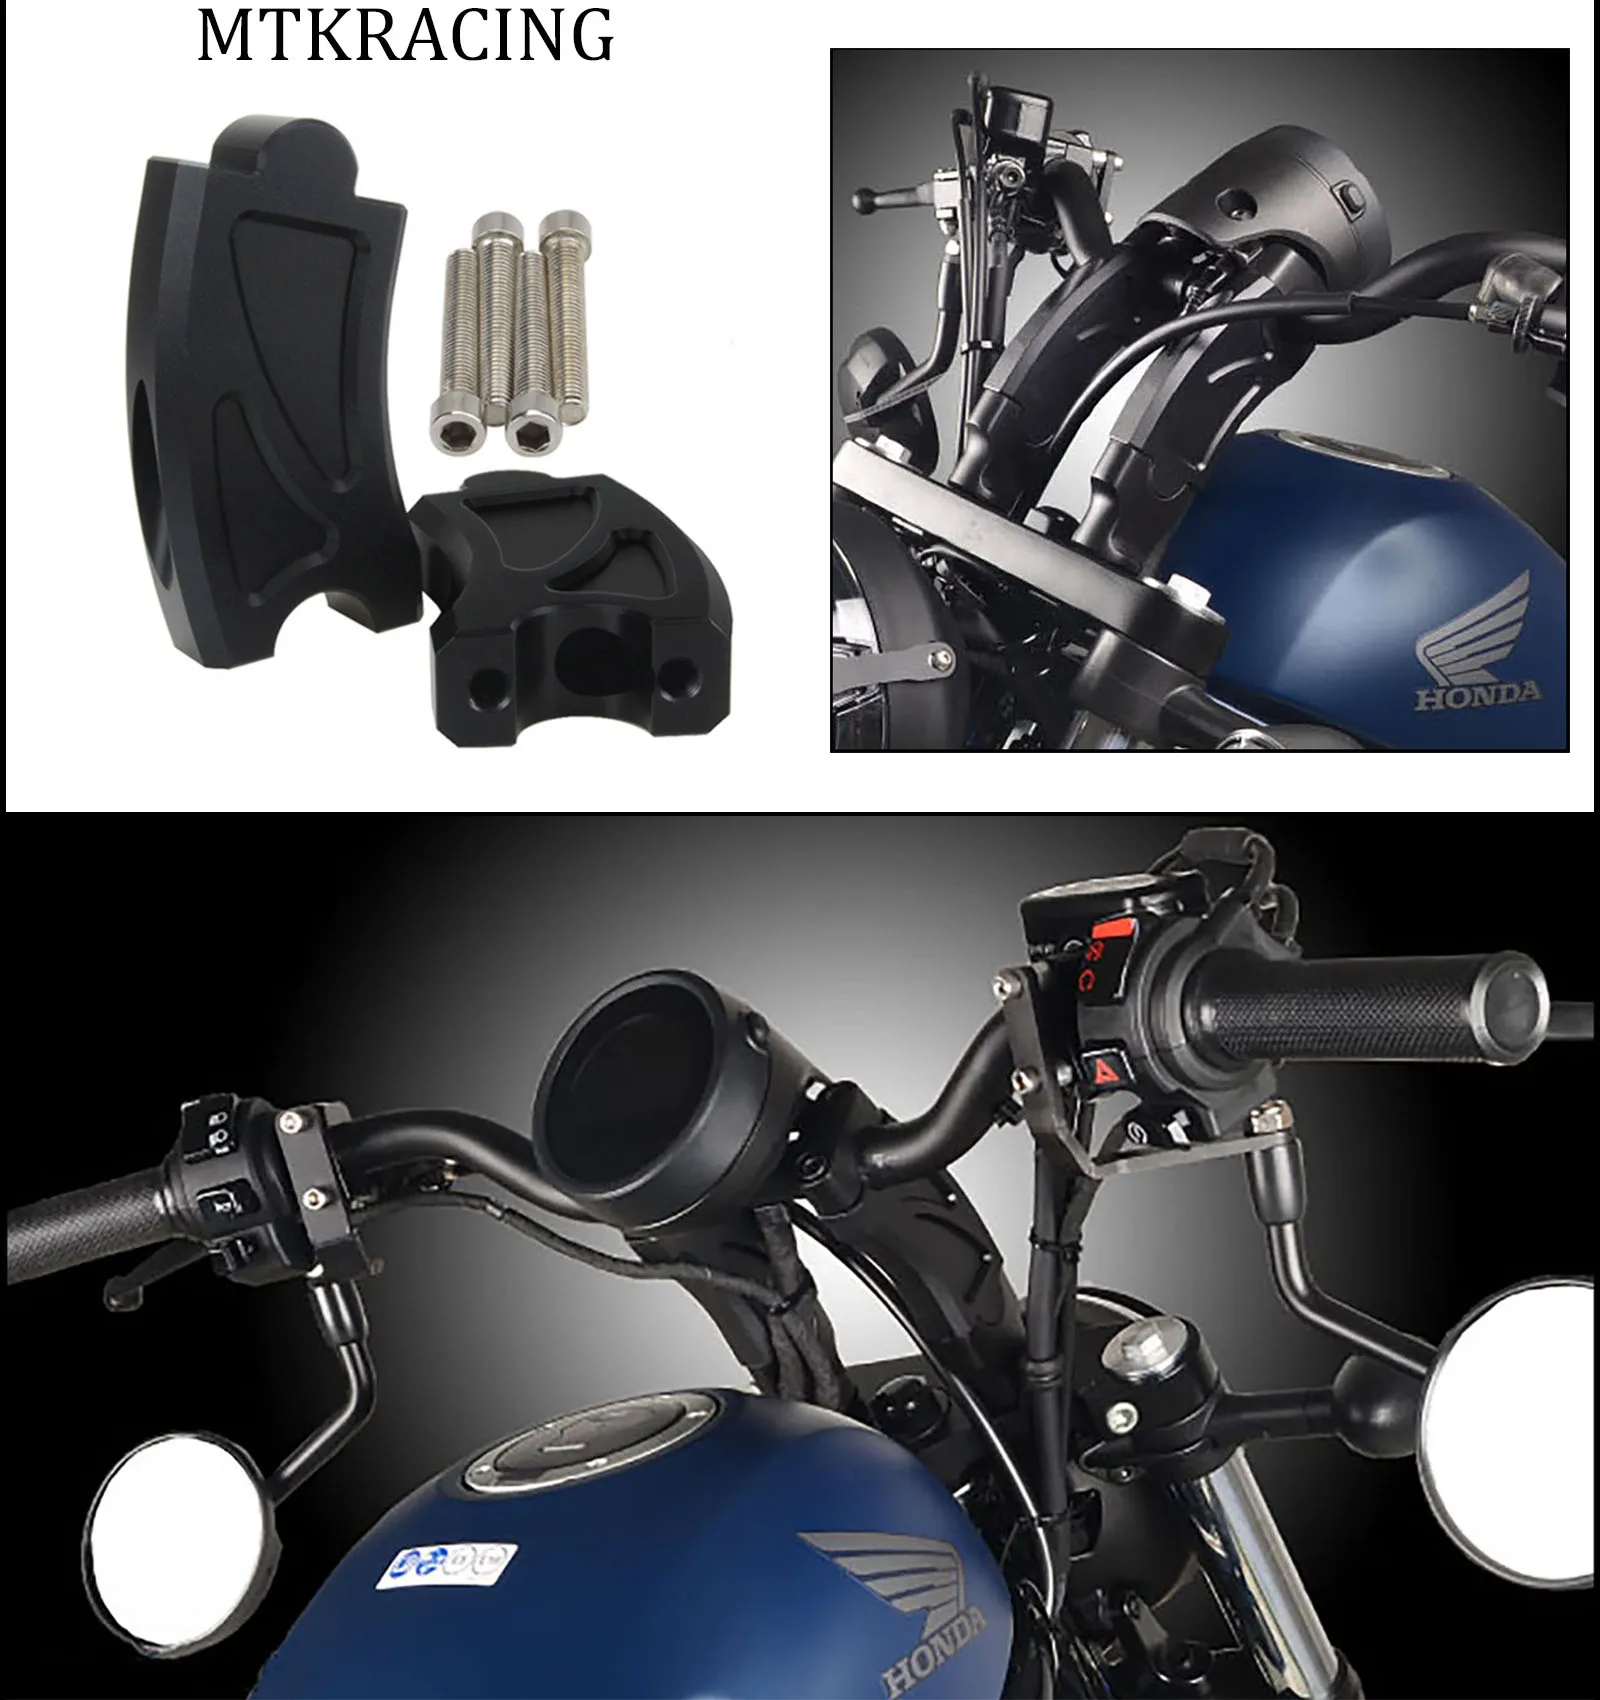 

Mtkracing motorcycle parts handlebar riser adapter for honda cmx500 rebel500 REBEL 500 cmx300 cmx 300 500 2020 handlebar back